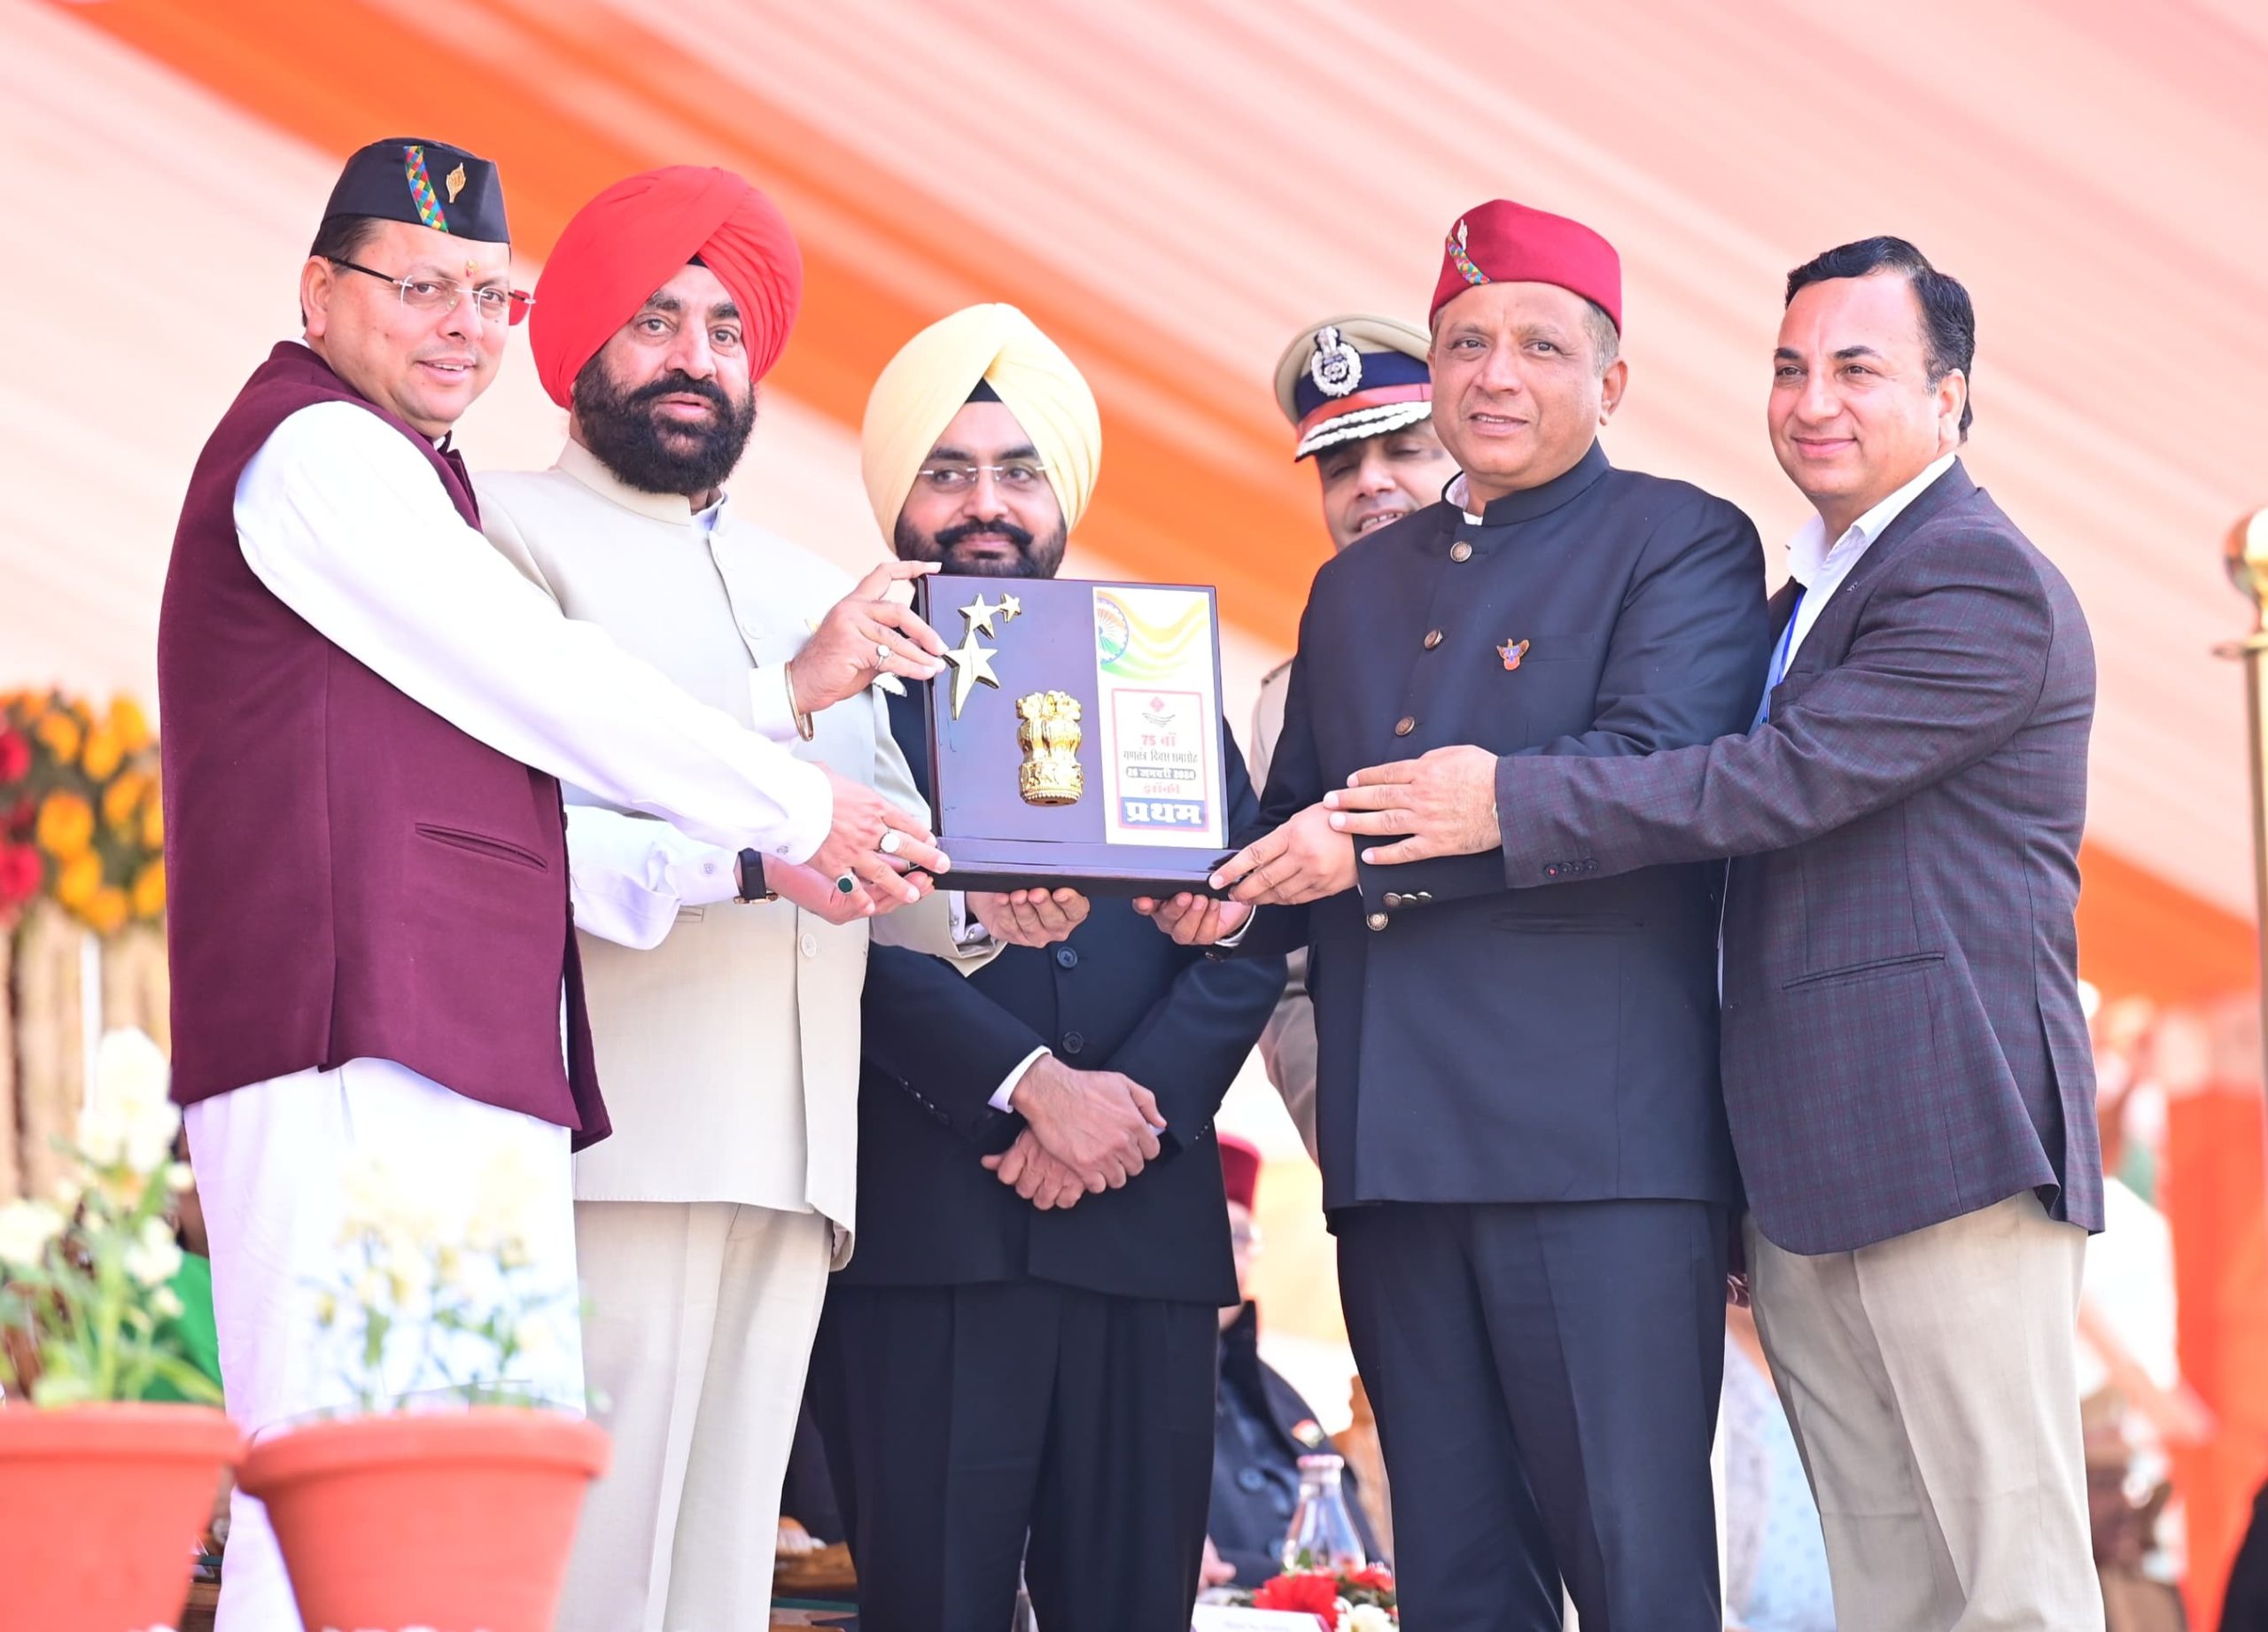 केंद्र के बाद अब राज्य में मिला सम्मान, गणतंत्र दिवस परेड पर इस विभाग की झांकी को मिला प्रथम पुरस्कार।